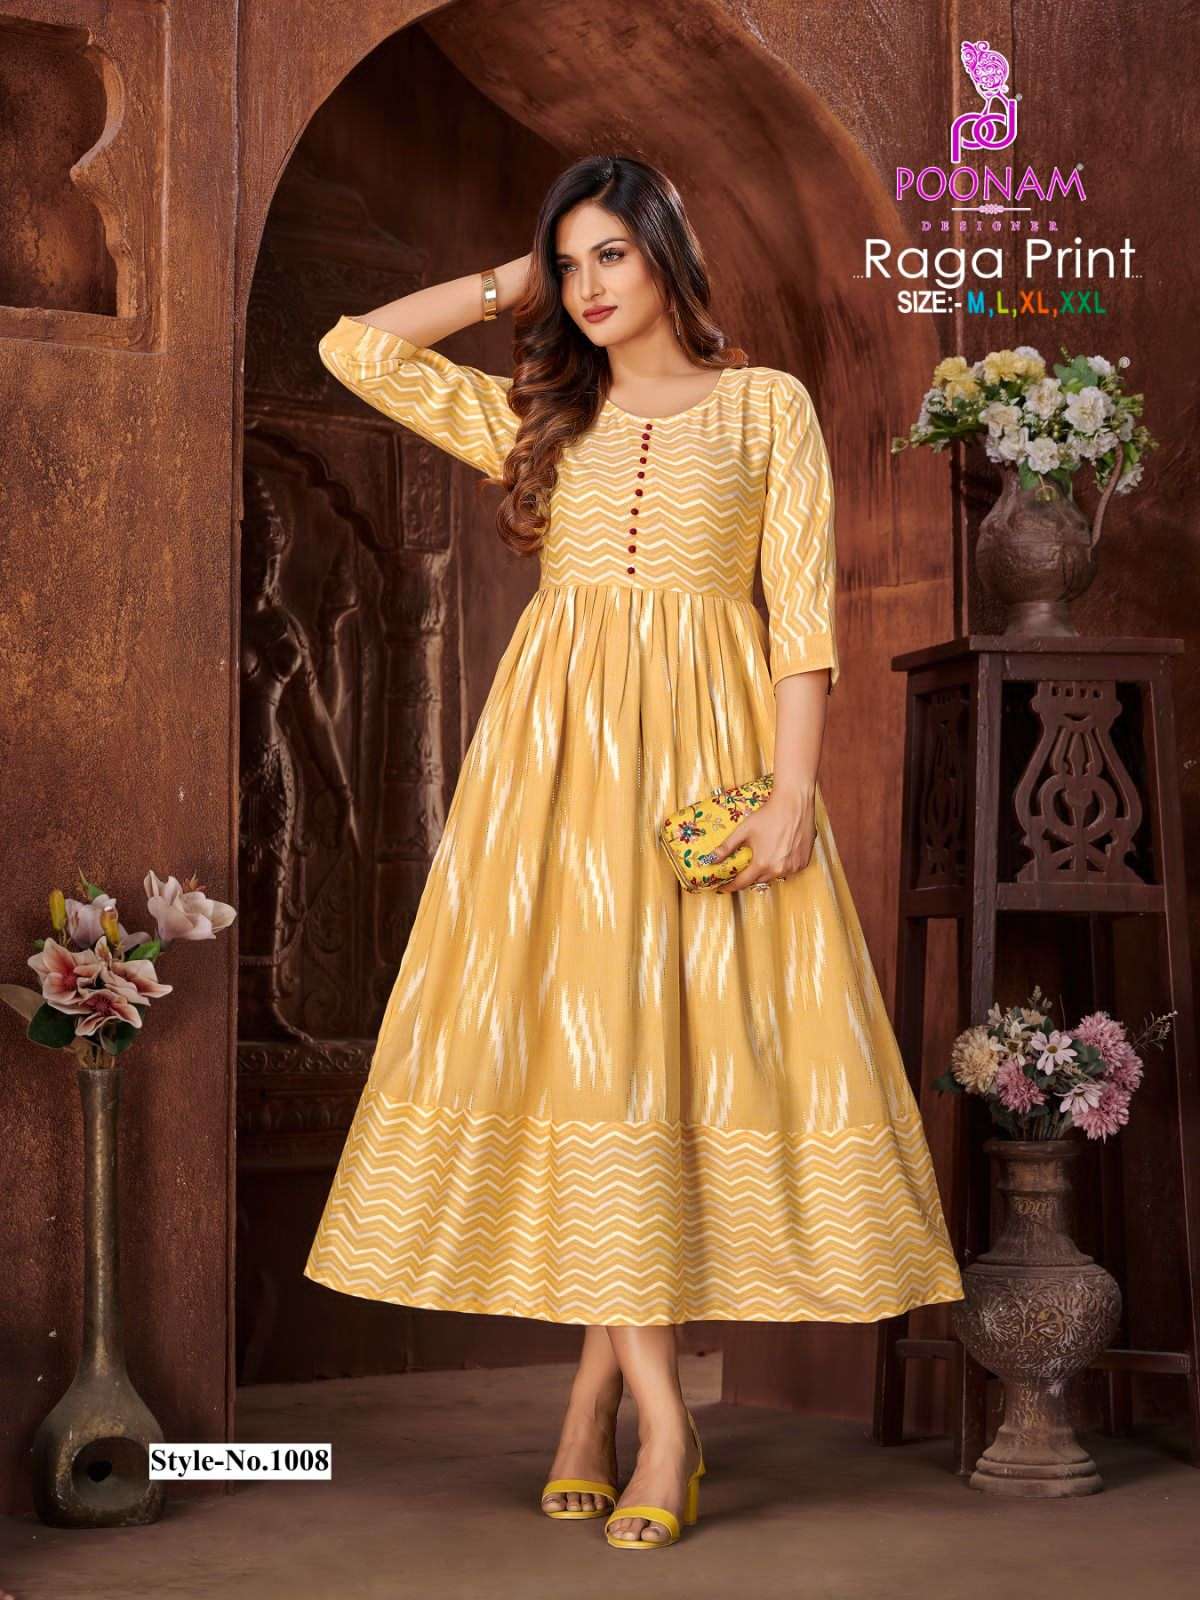 poonam designer raga print 1001-1012 series trendy designer gown catalogue design 2023 